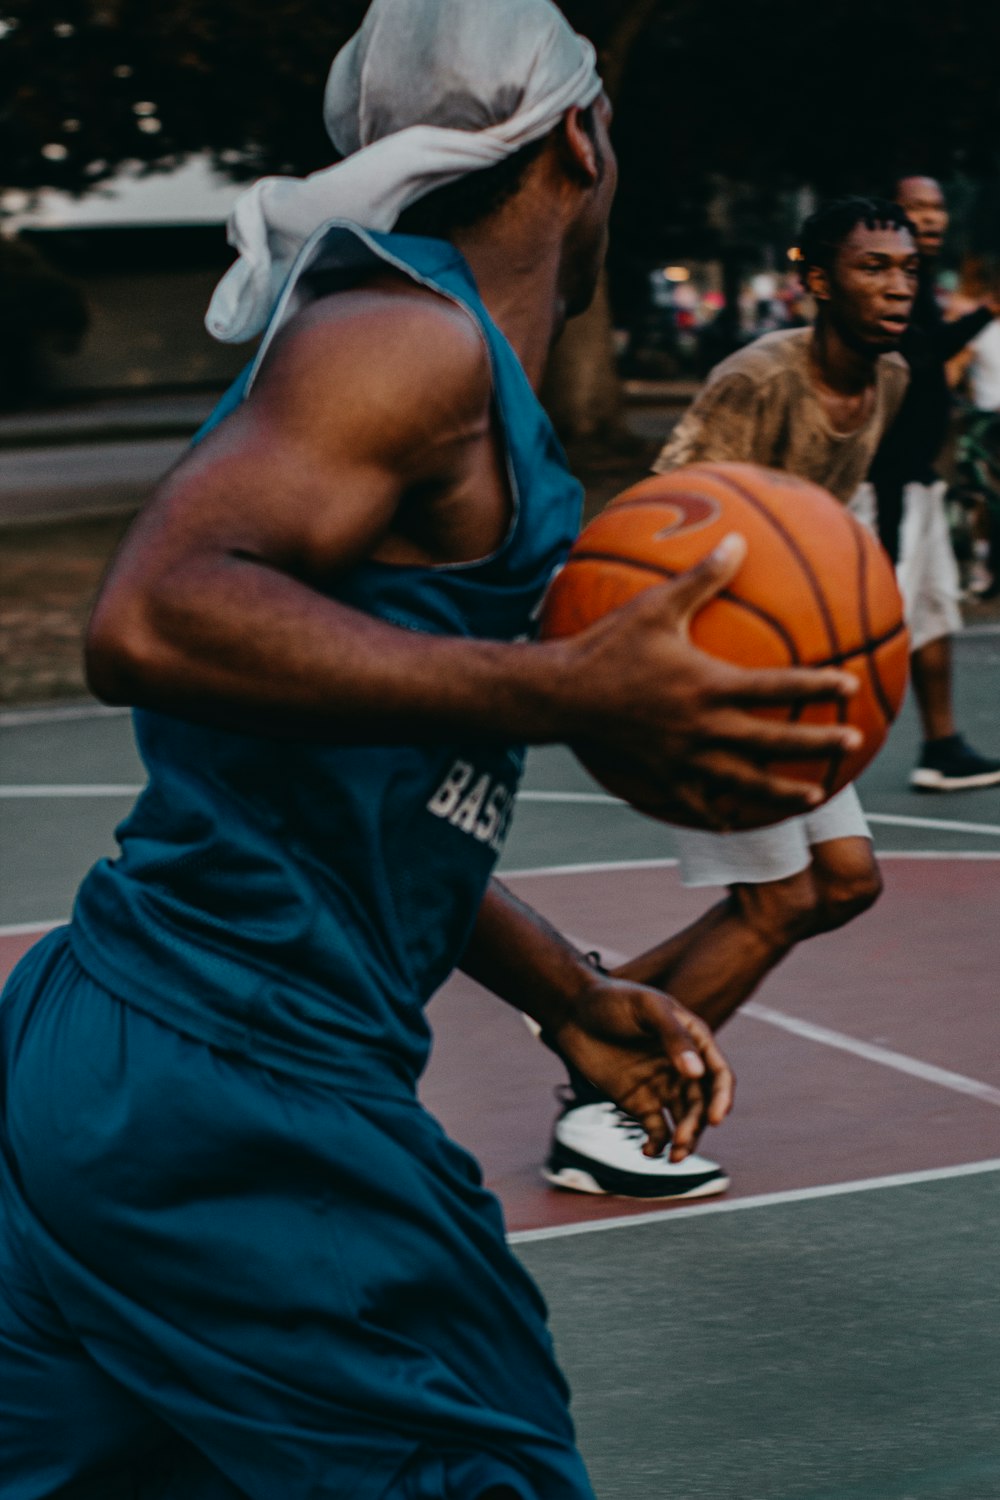 Mann in blauer Basketball-Uniform mit Ball im Spielfeld